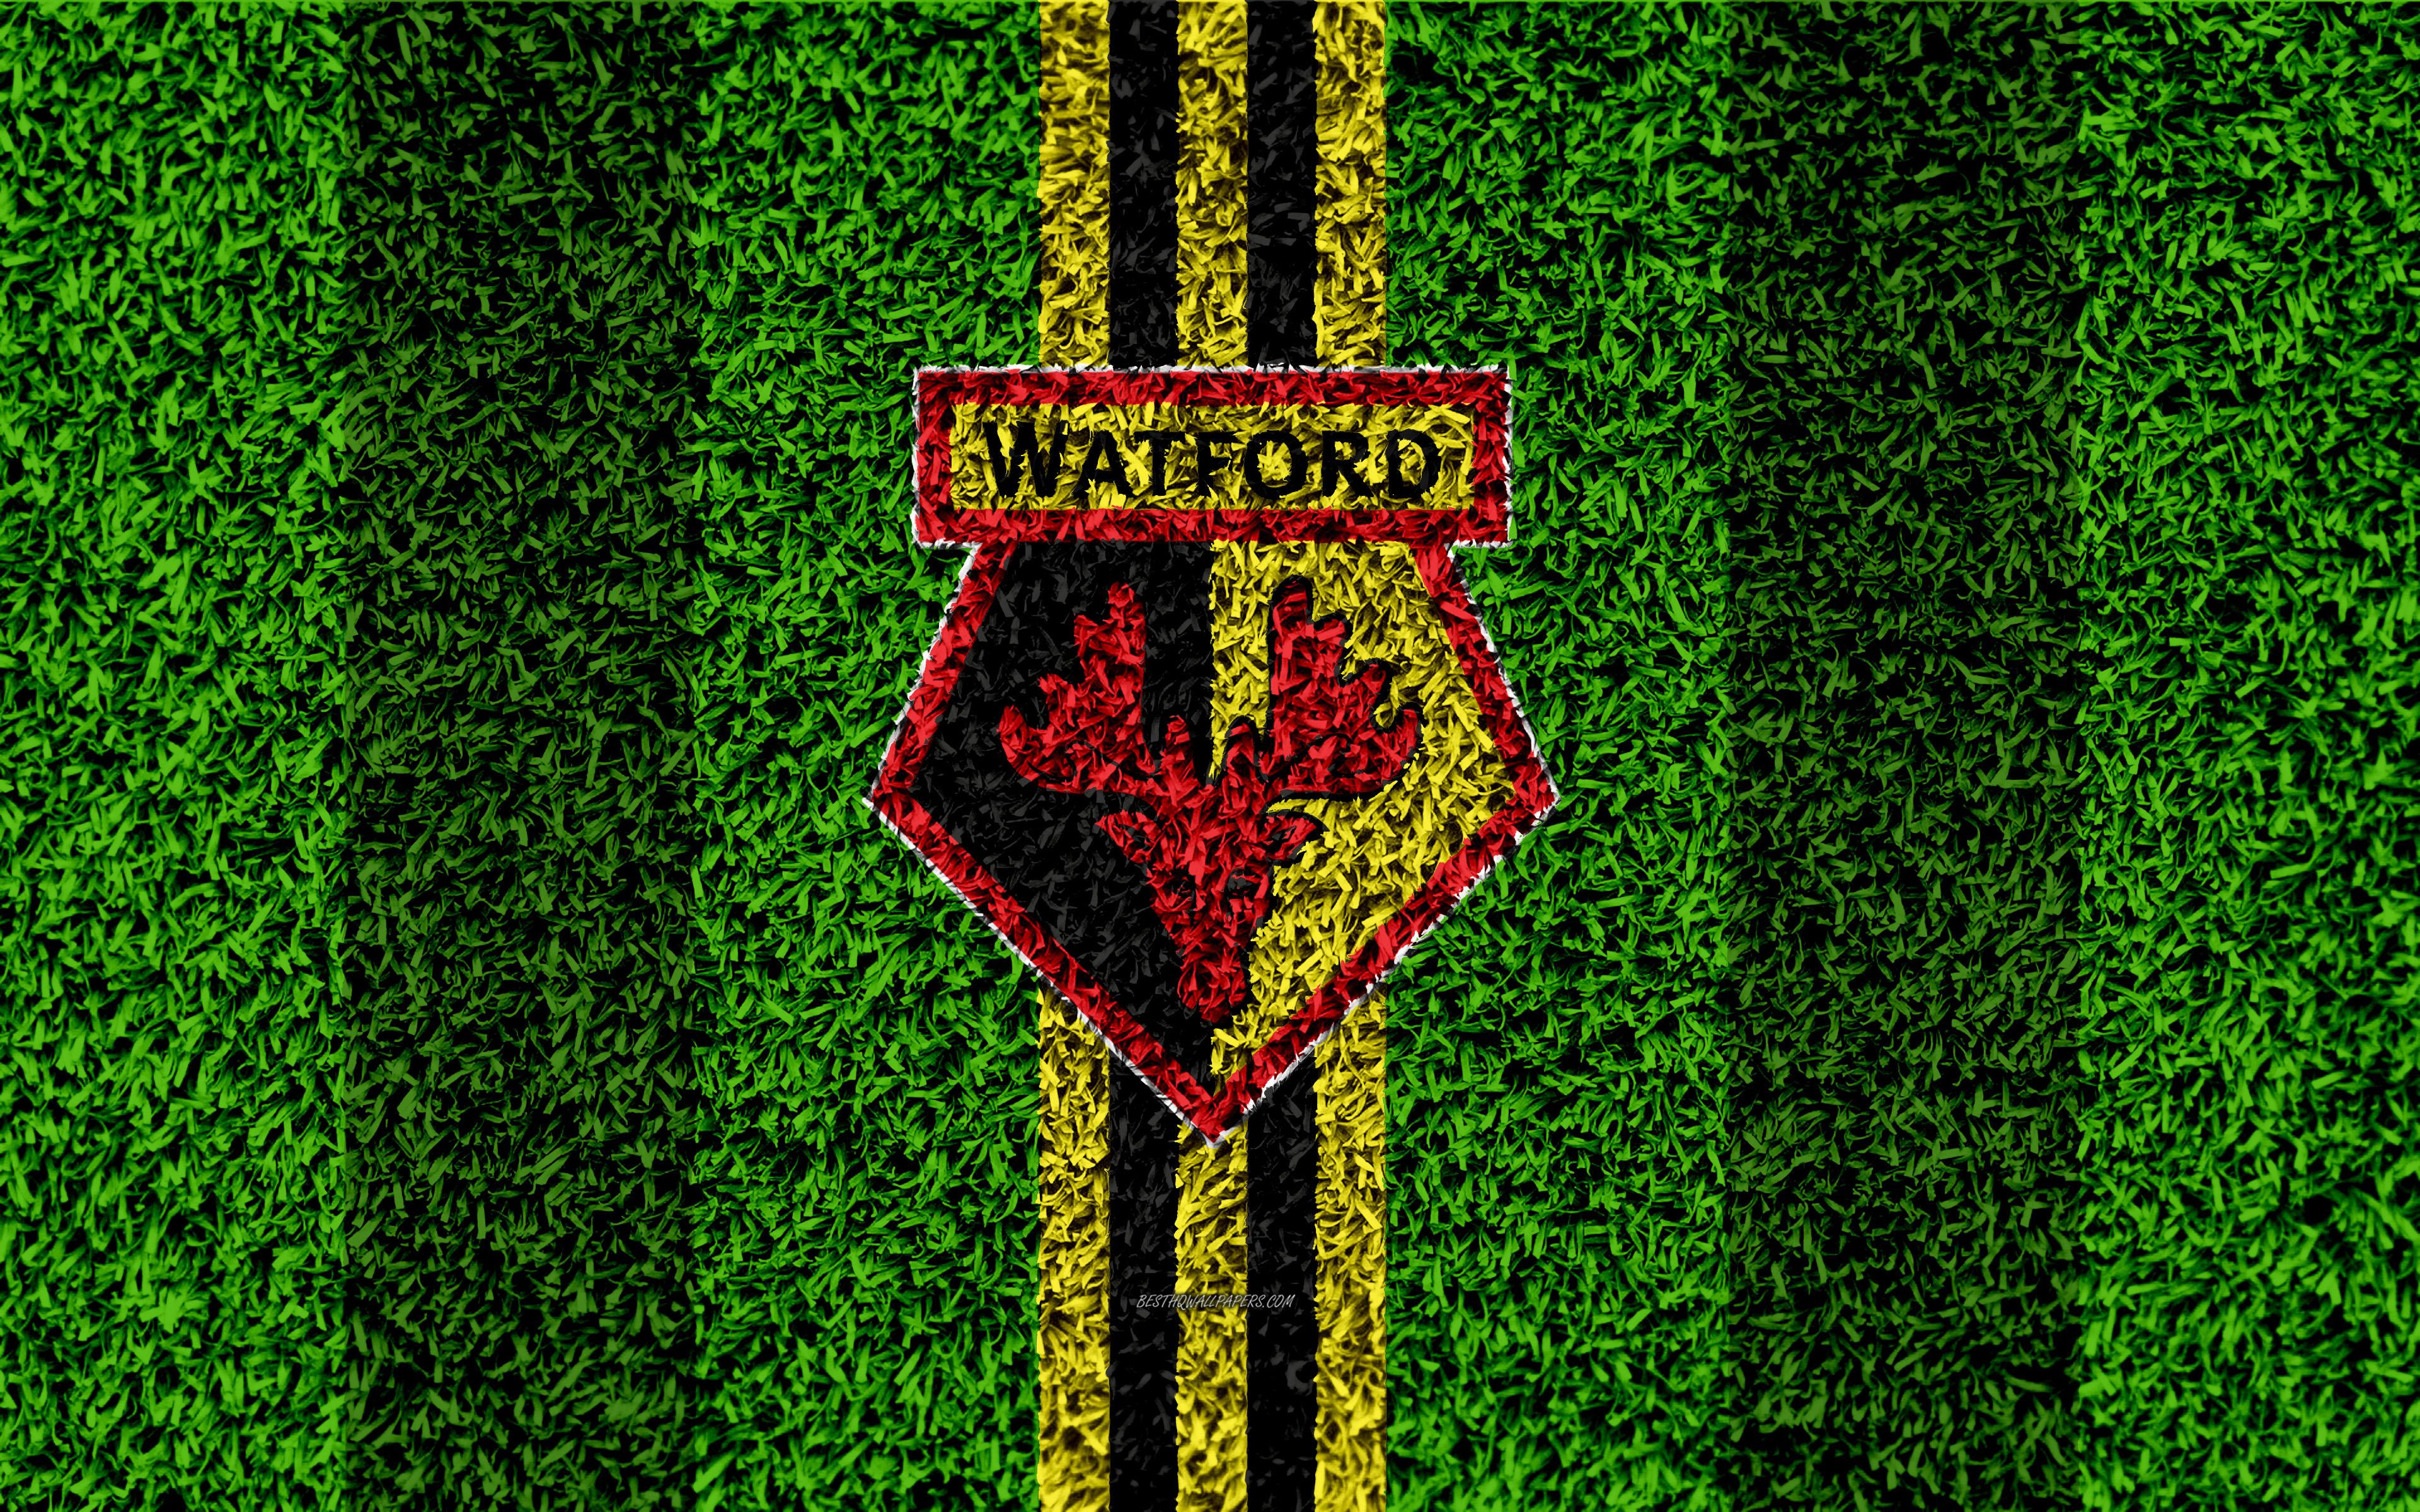 Download wallpaper Watford FC, 4k, football lawn, emblem